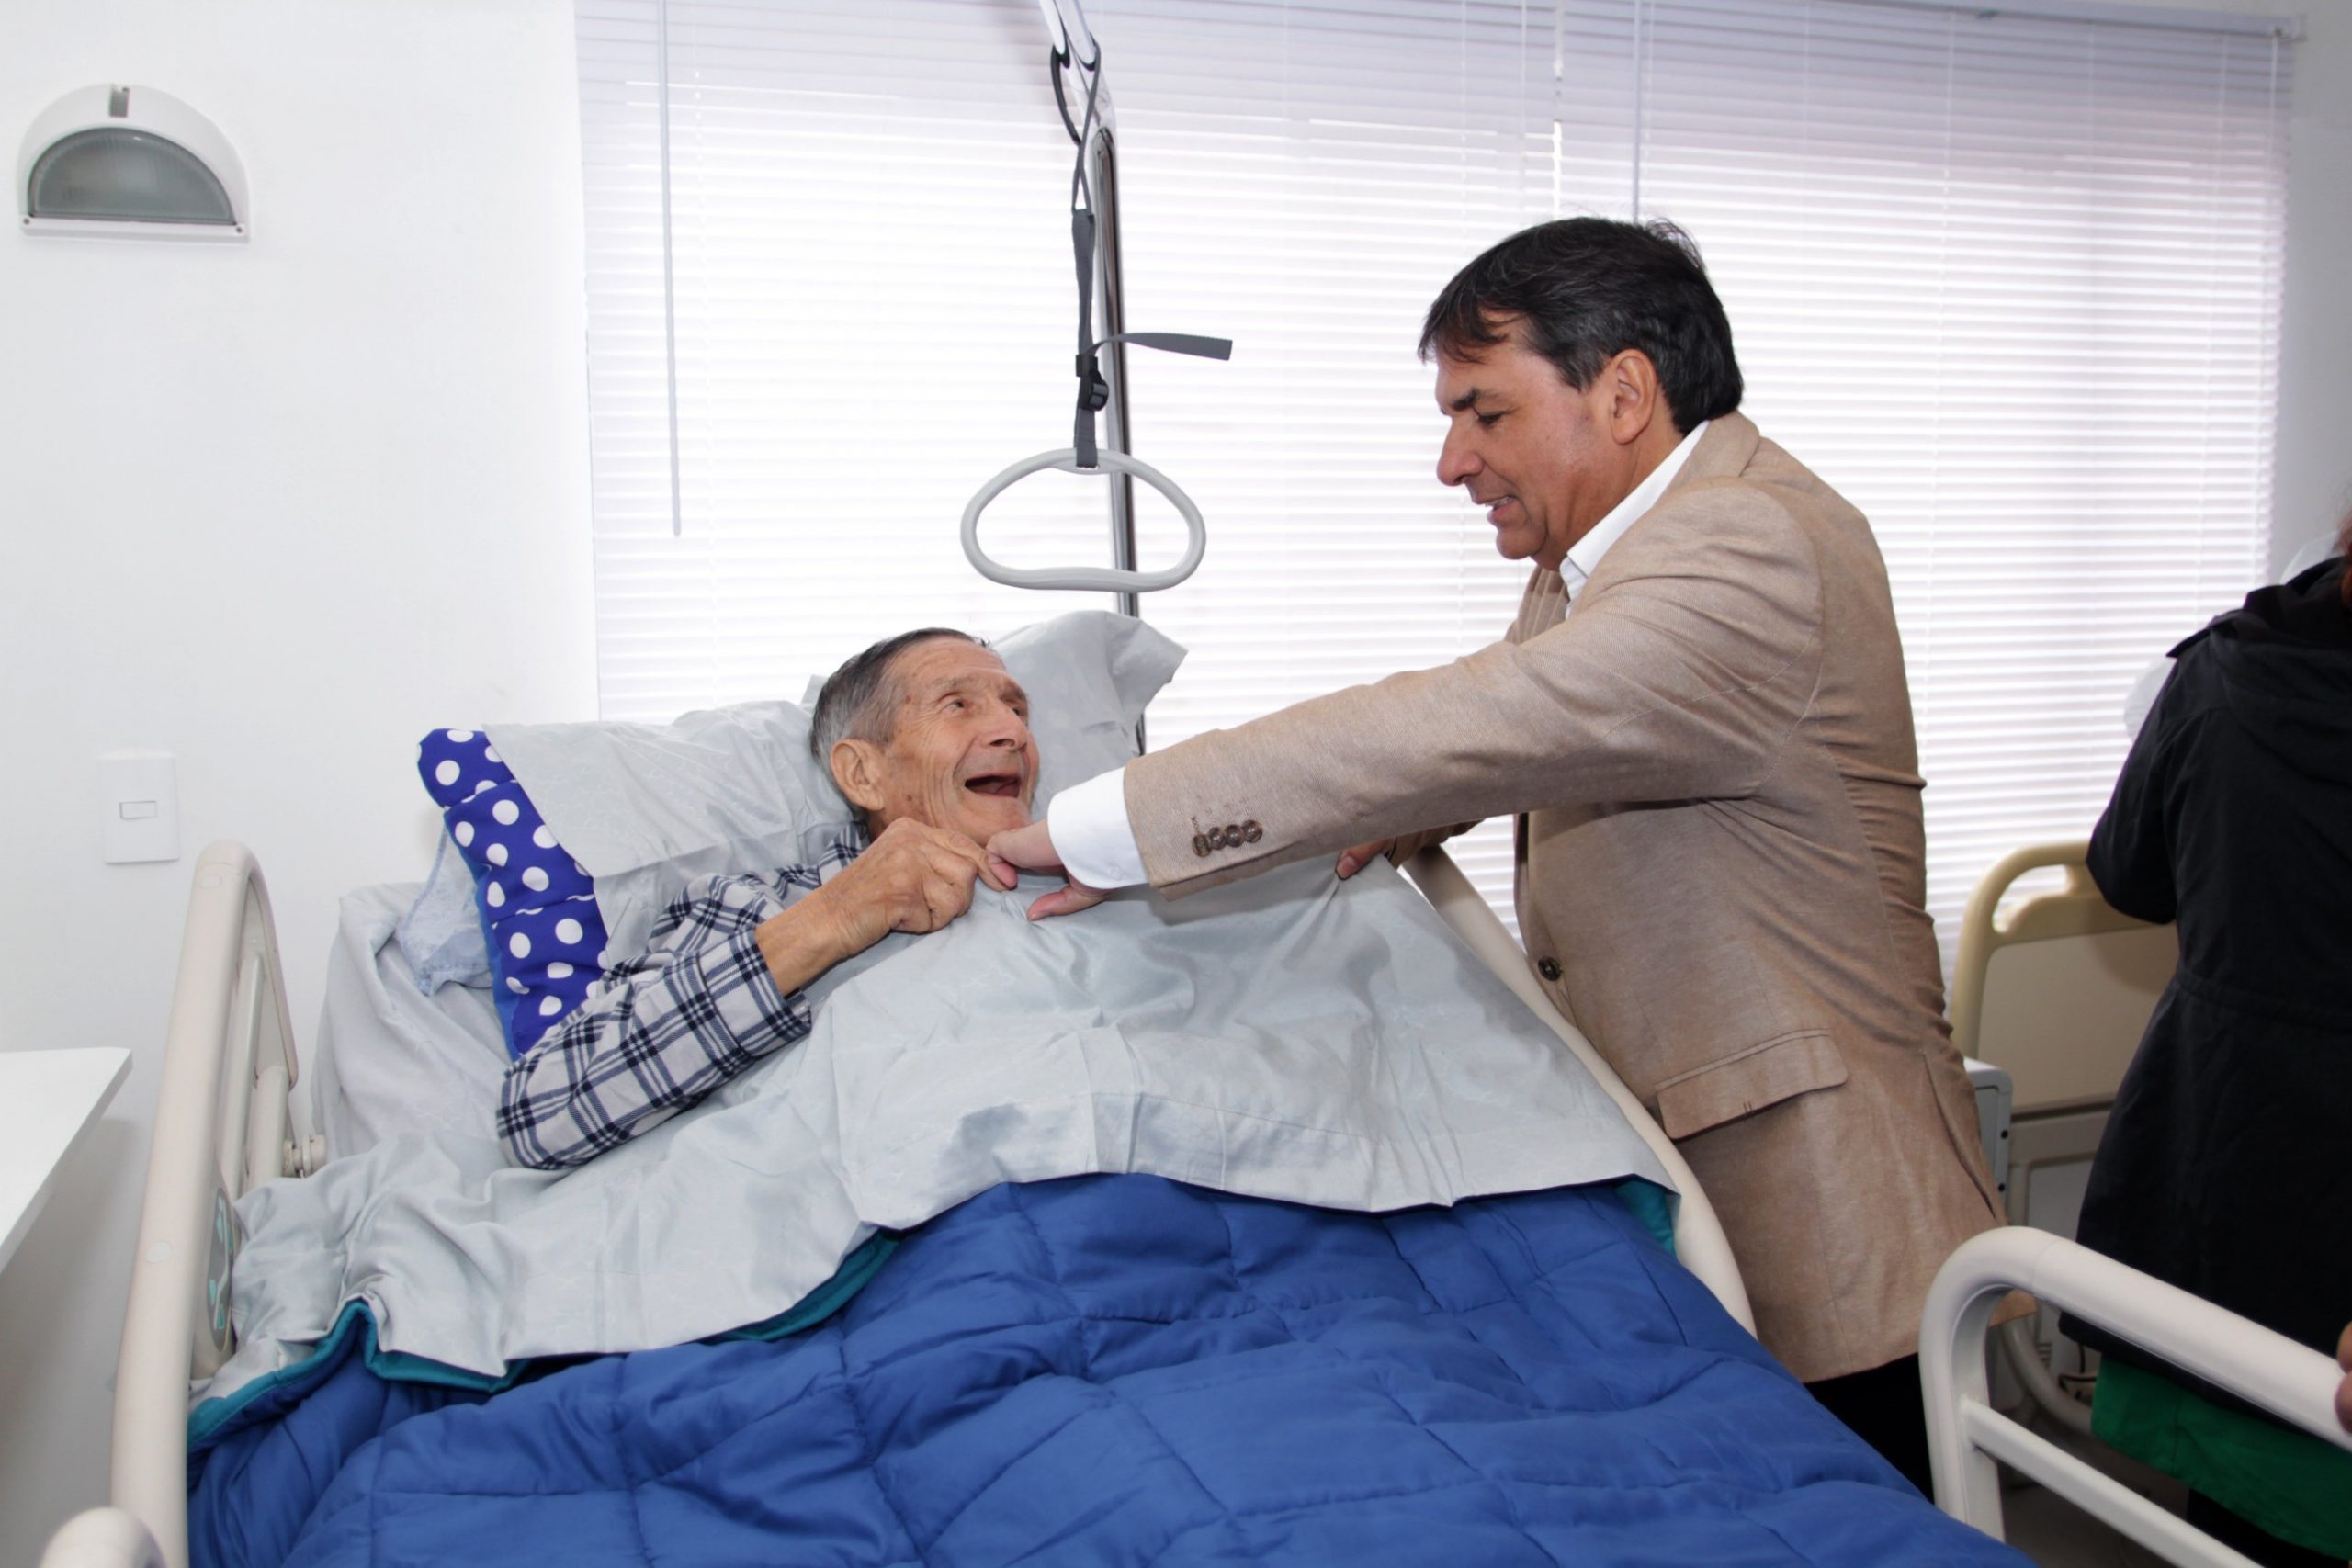 Imagen refrencial: El doctor Luis Mella continúa realizando una abnegada labor apoyando a adultos mayores en la Casa de Acogida "Beatita Benavides".